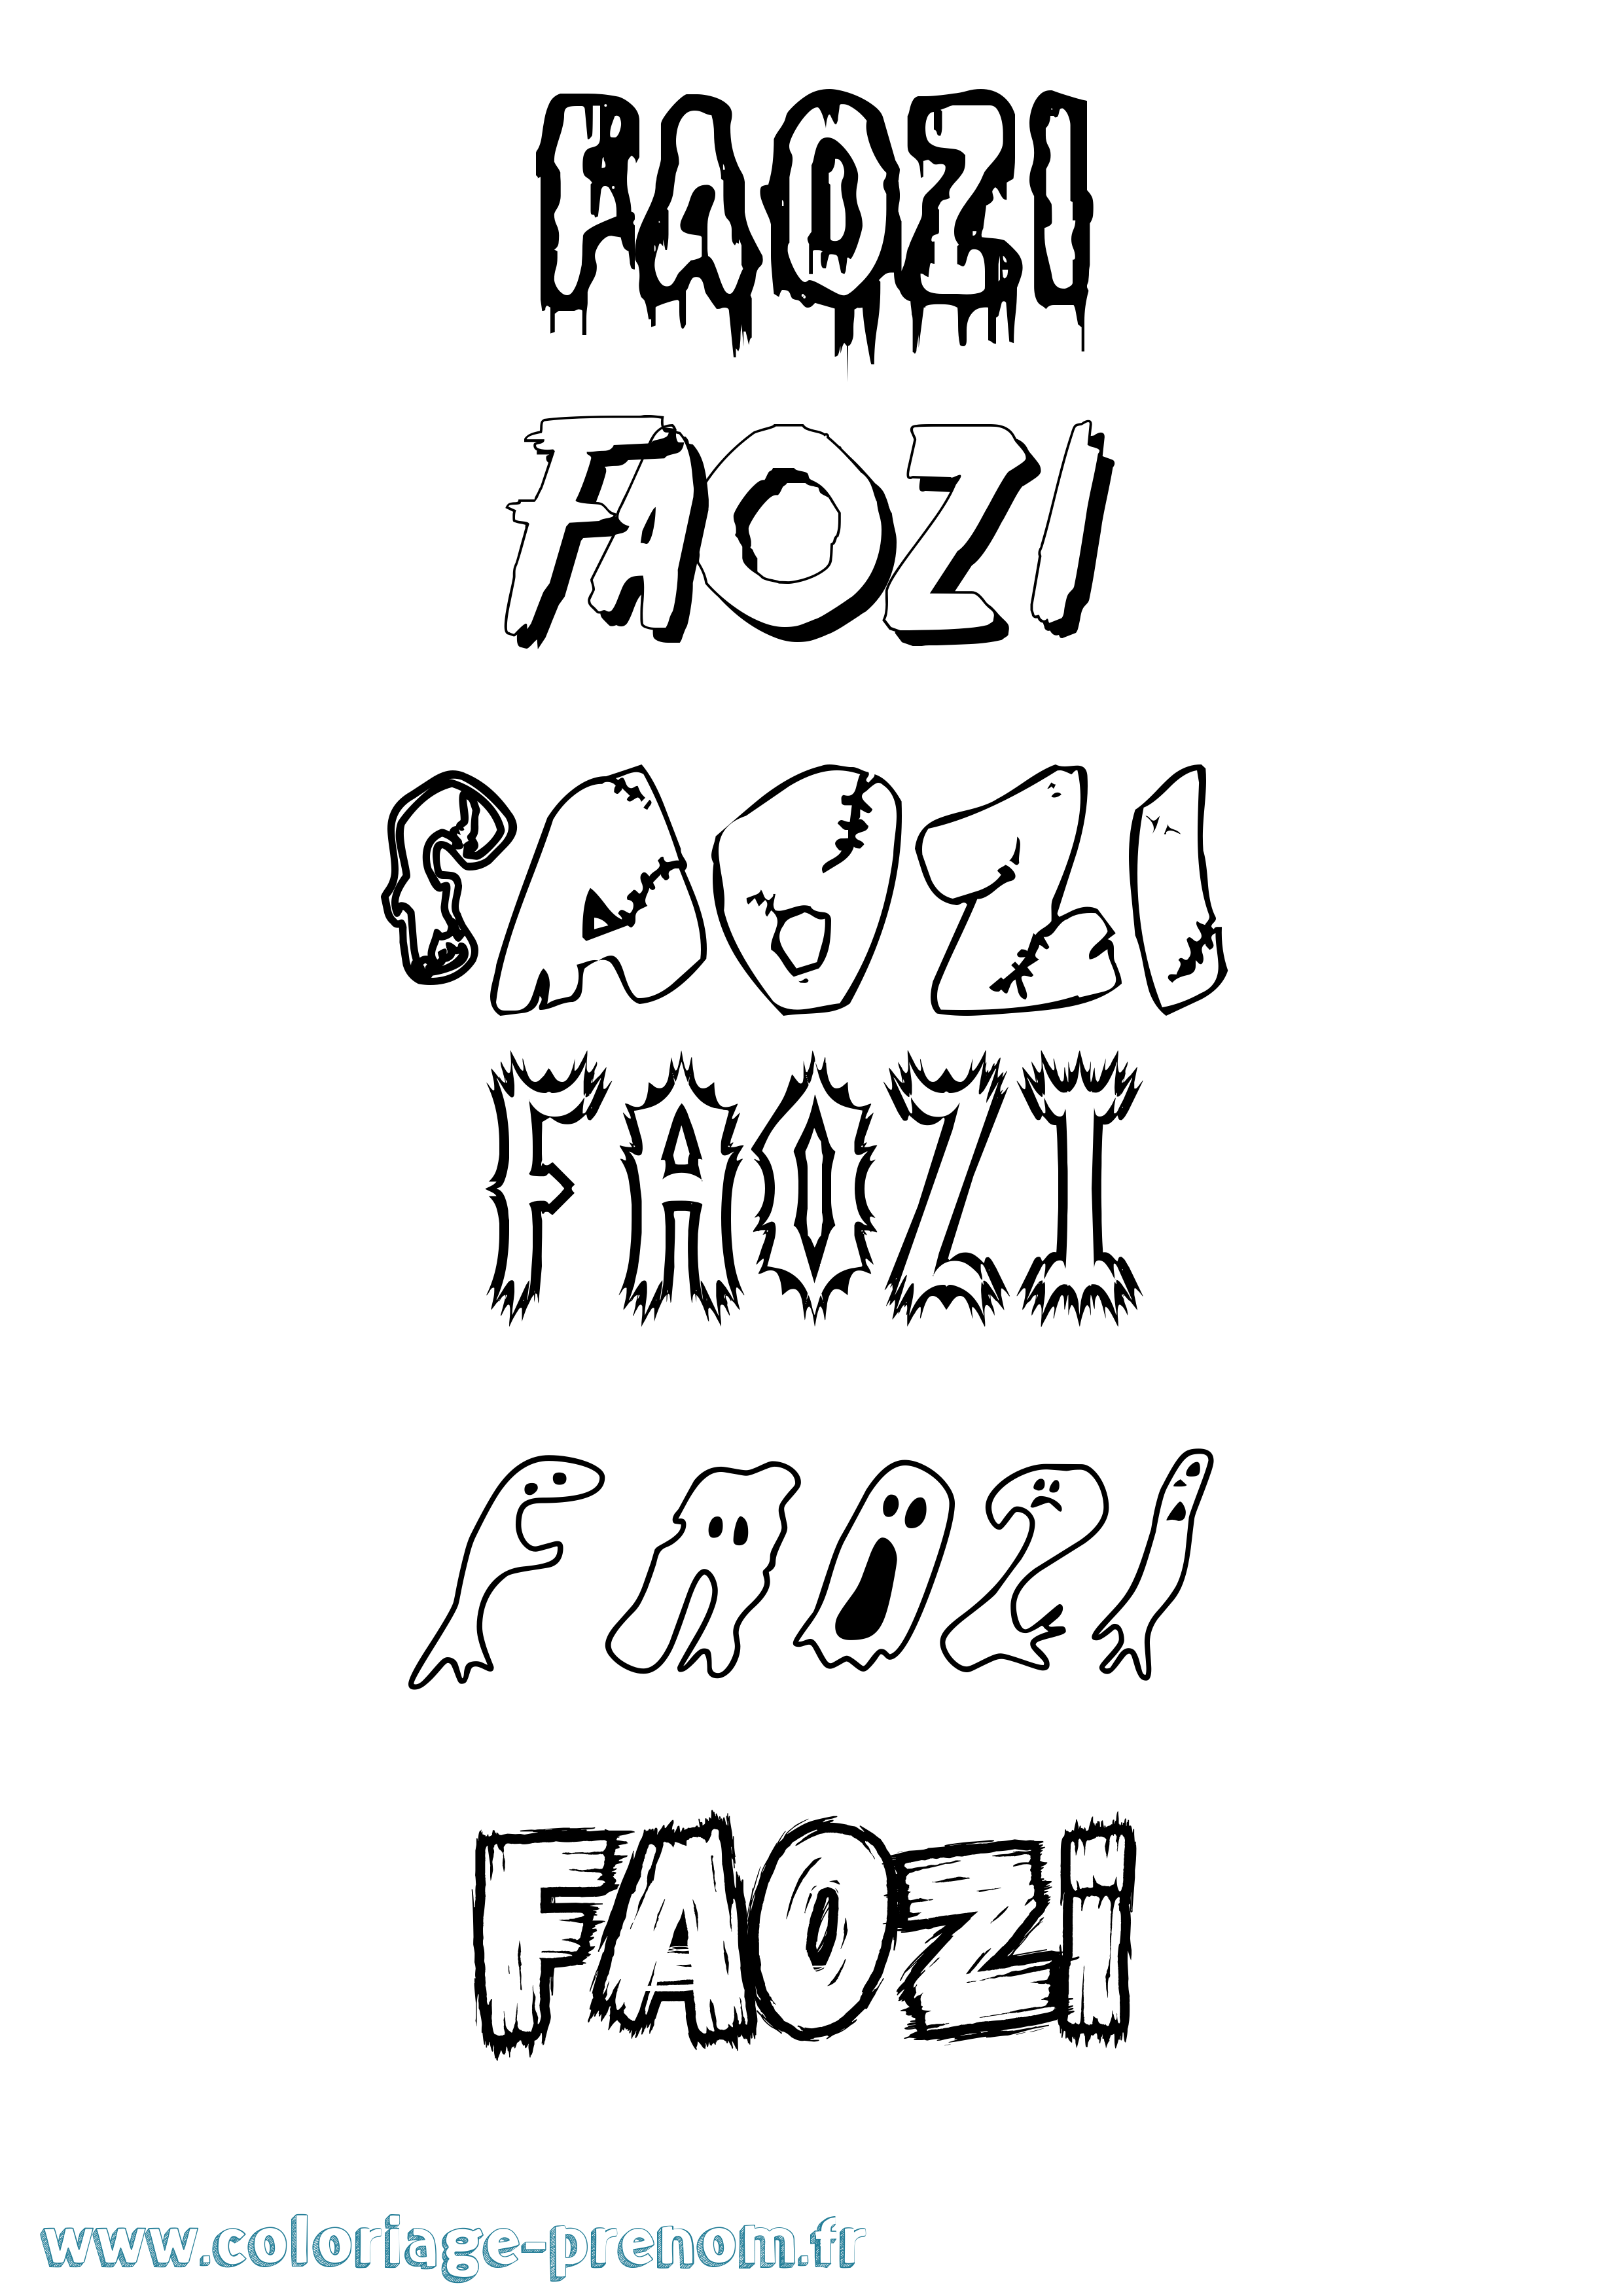 Coloriage prénom Faozi Frisson